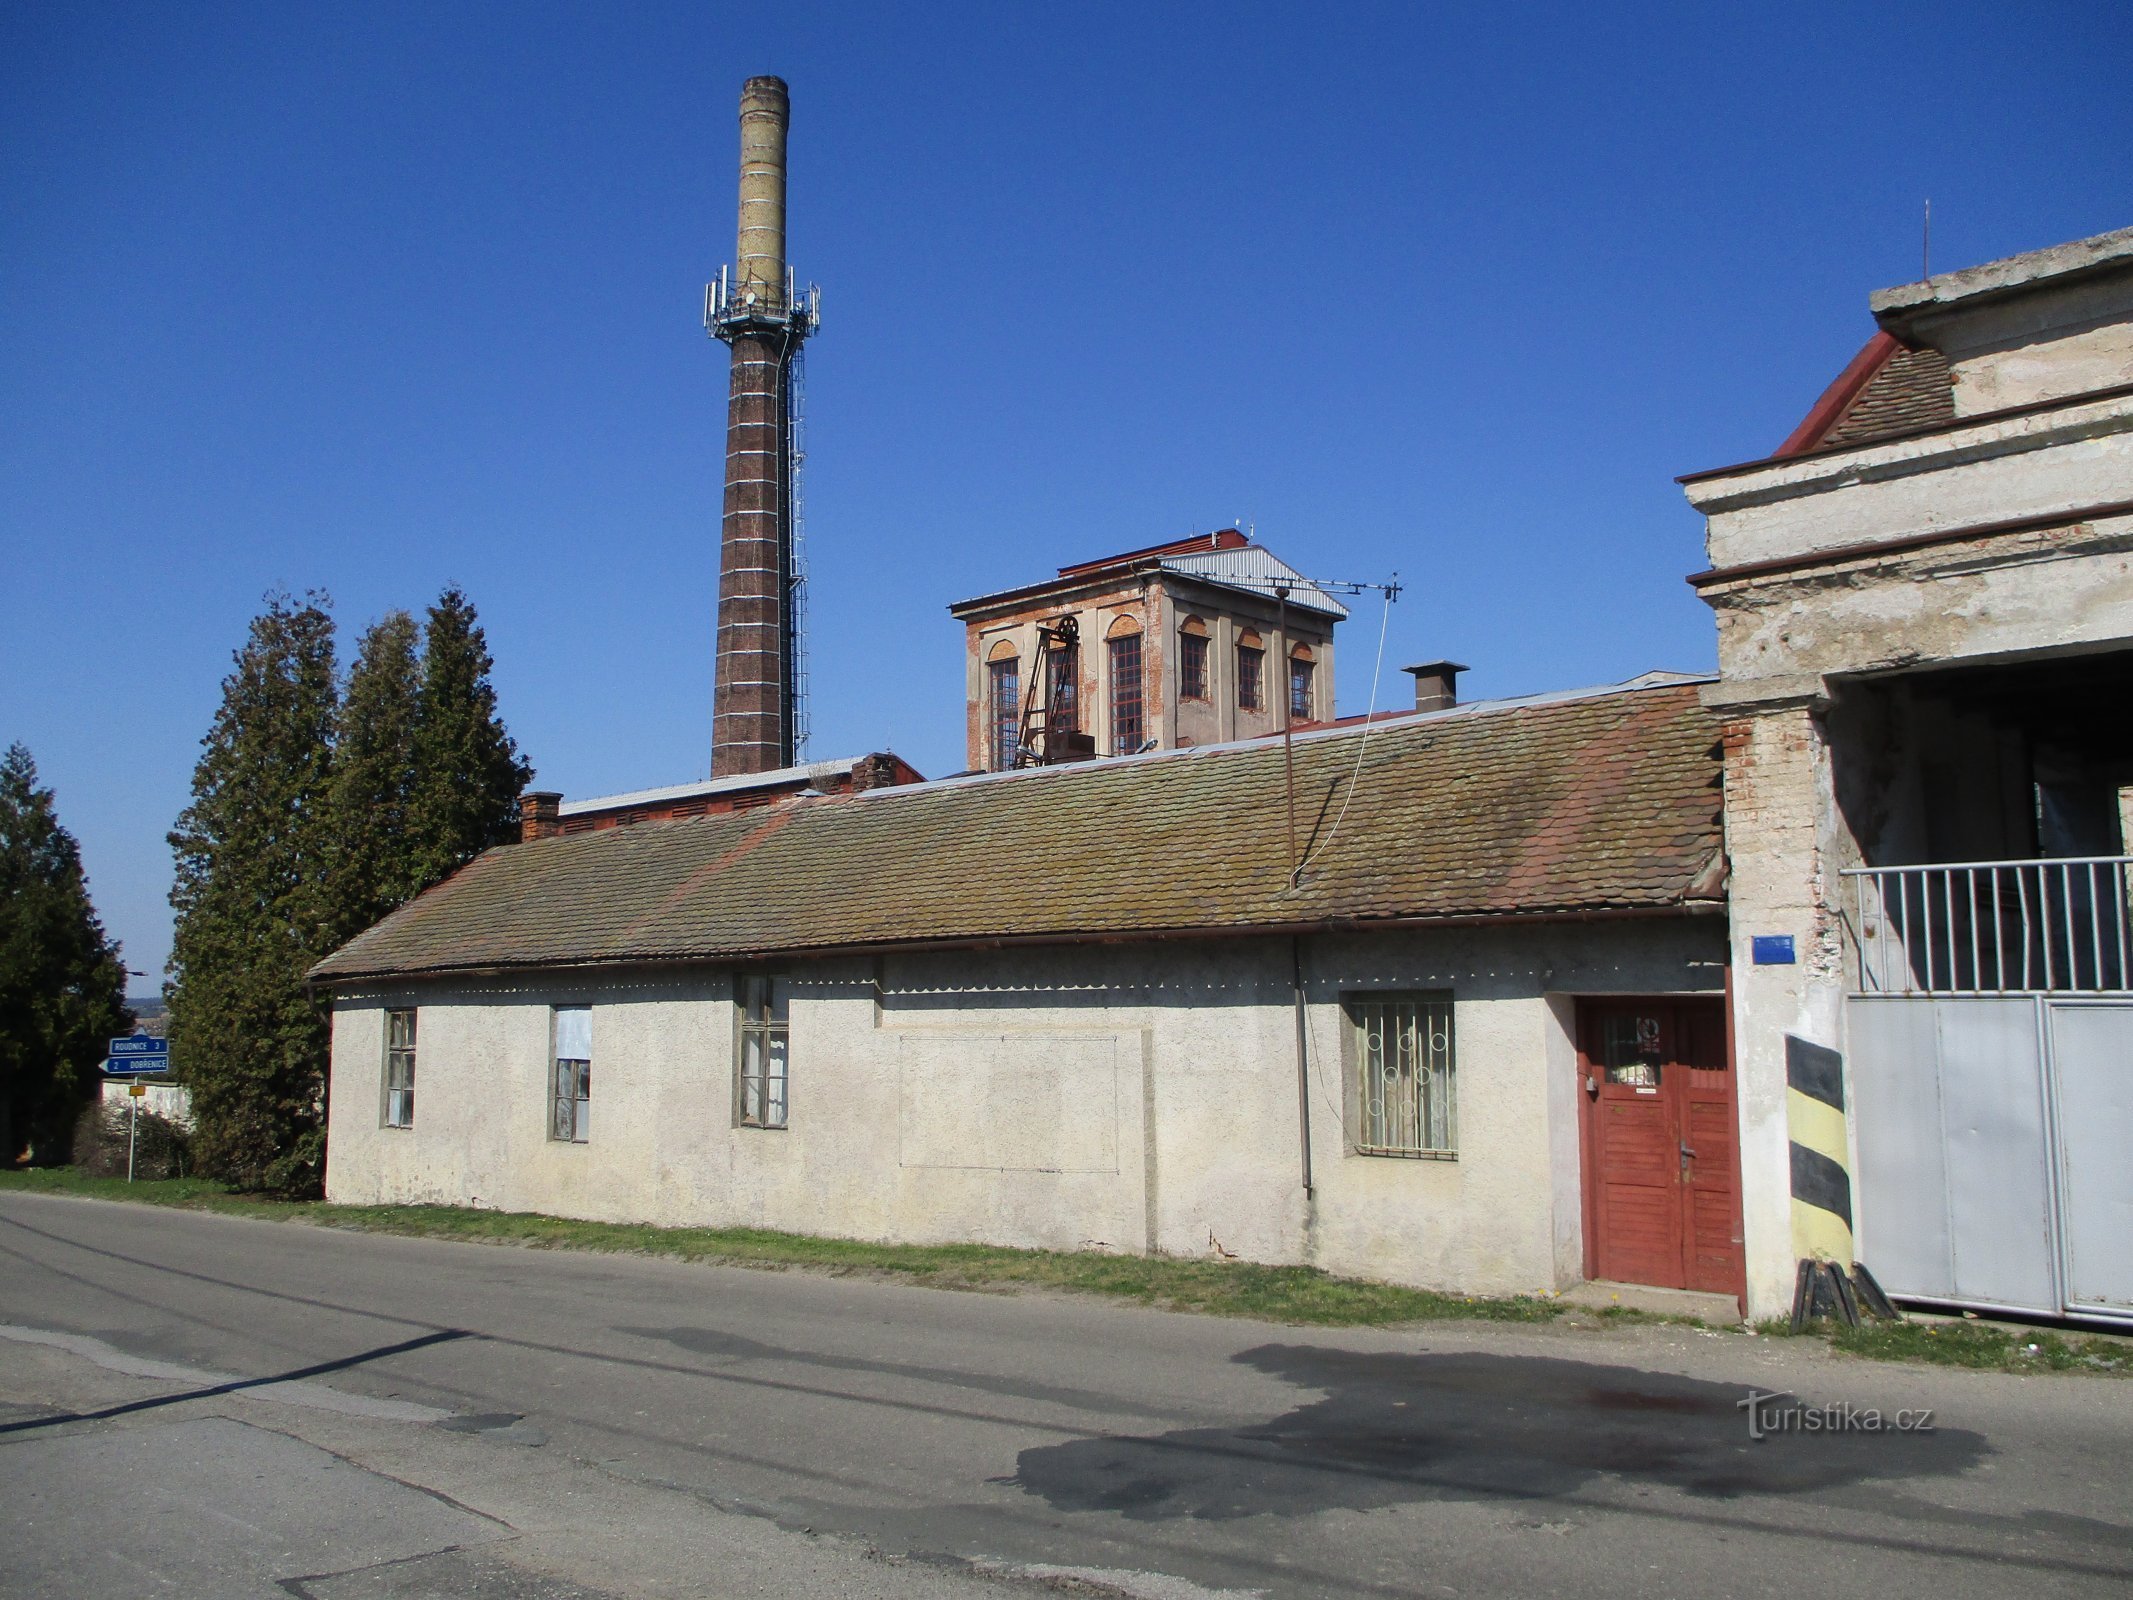 Ancienne sucrerie (Syrovátka, 7.4.2020/XNUMX/XNUMX)